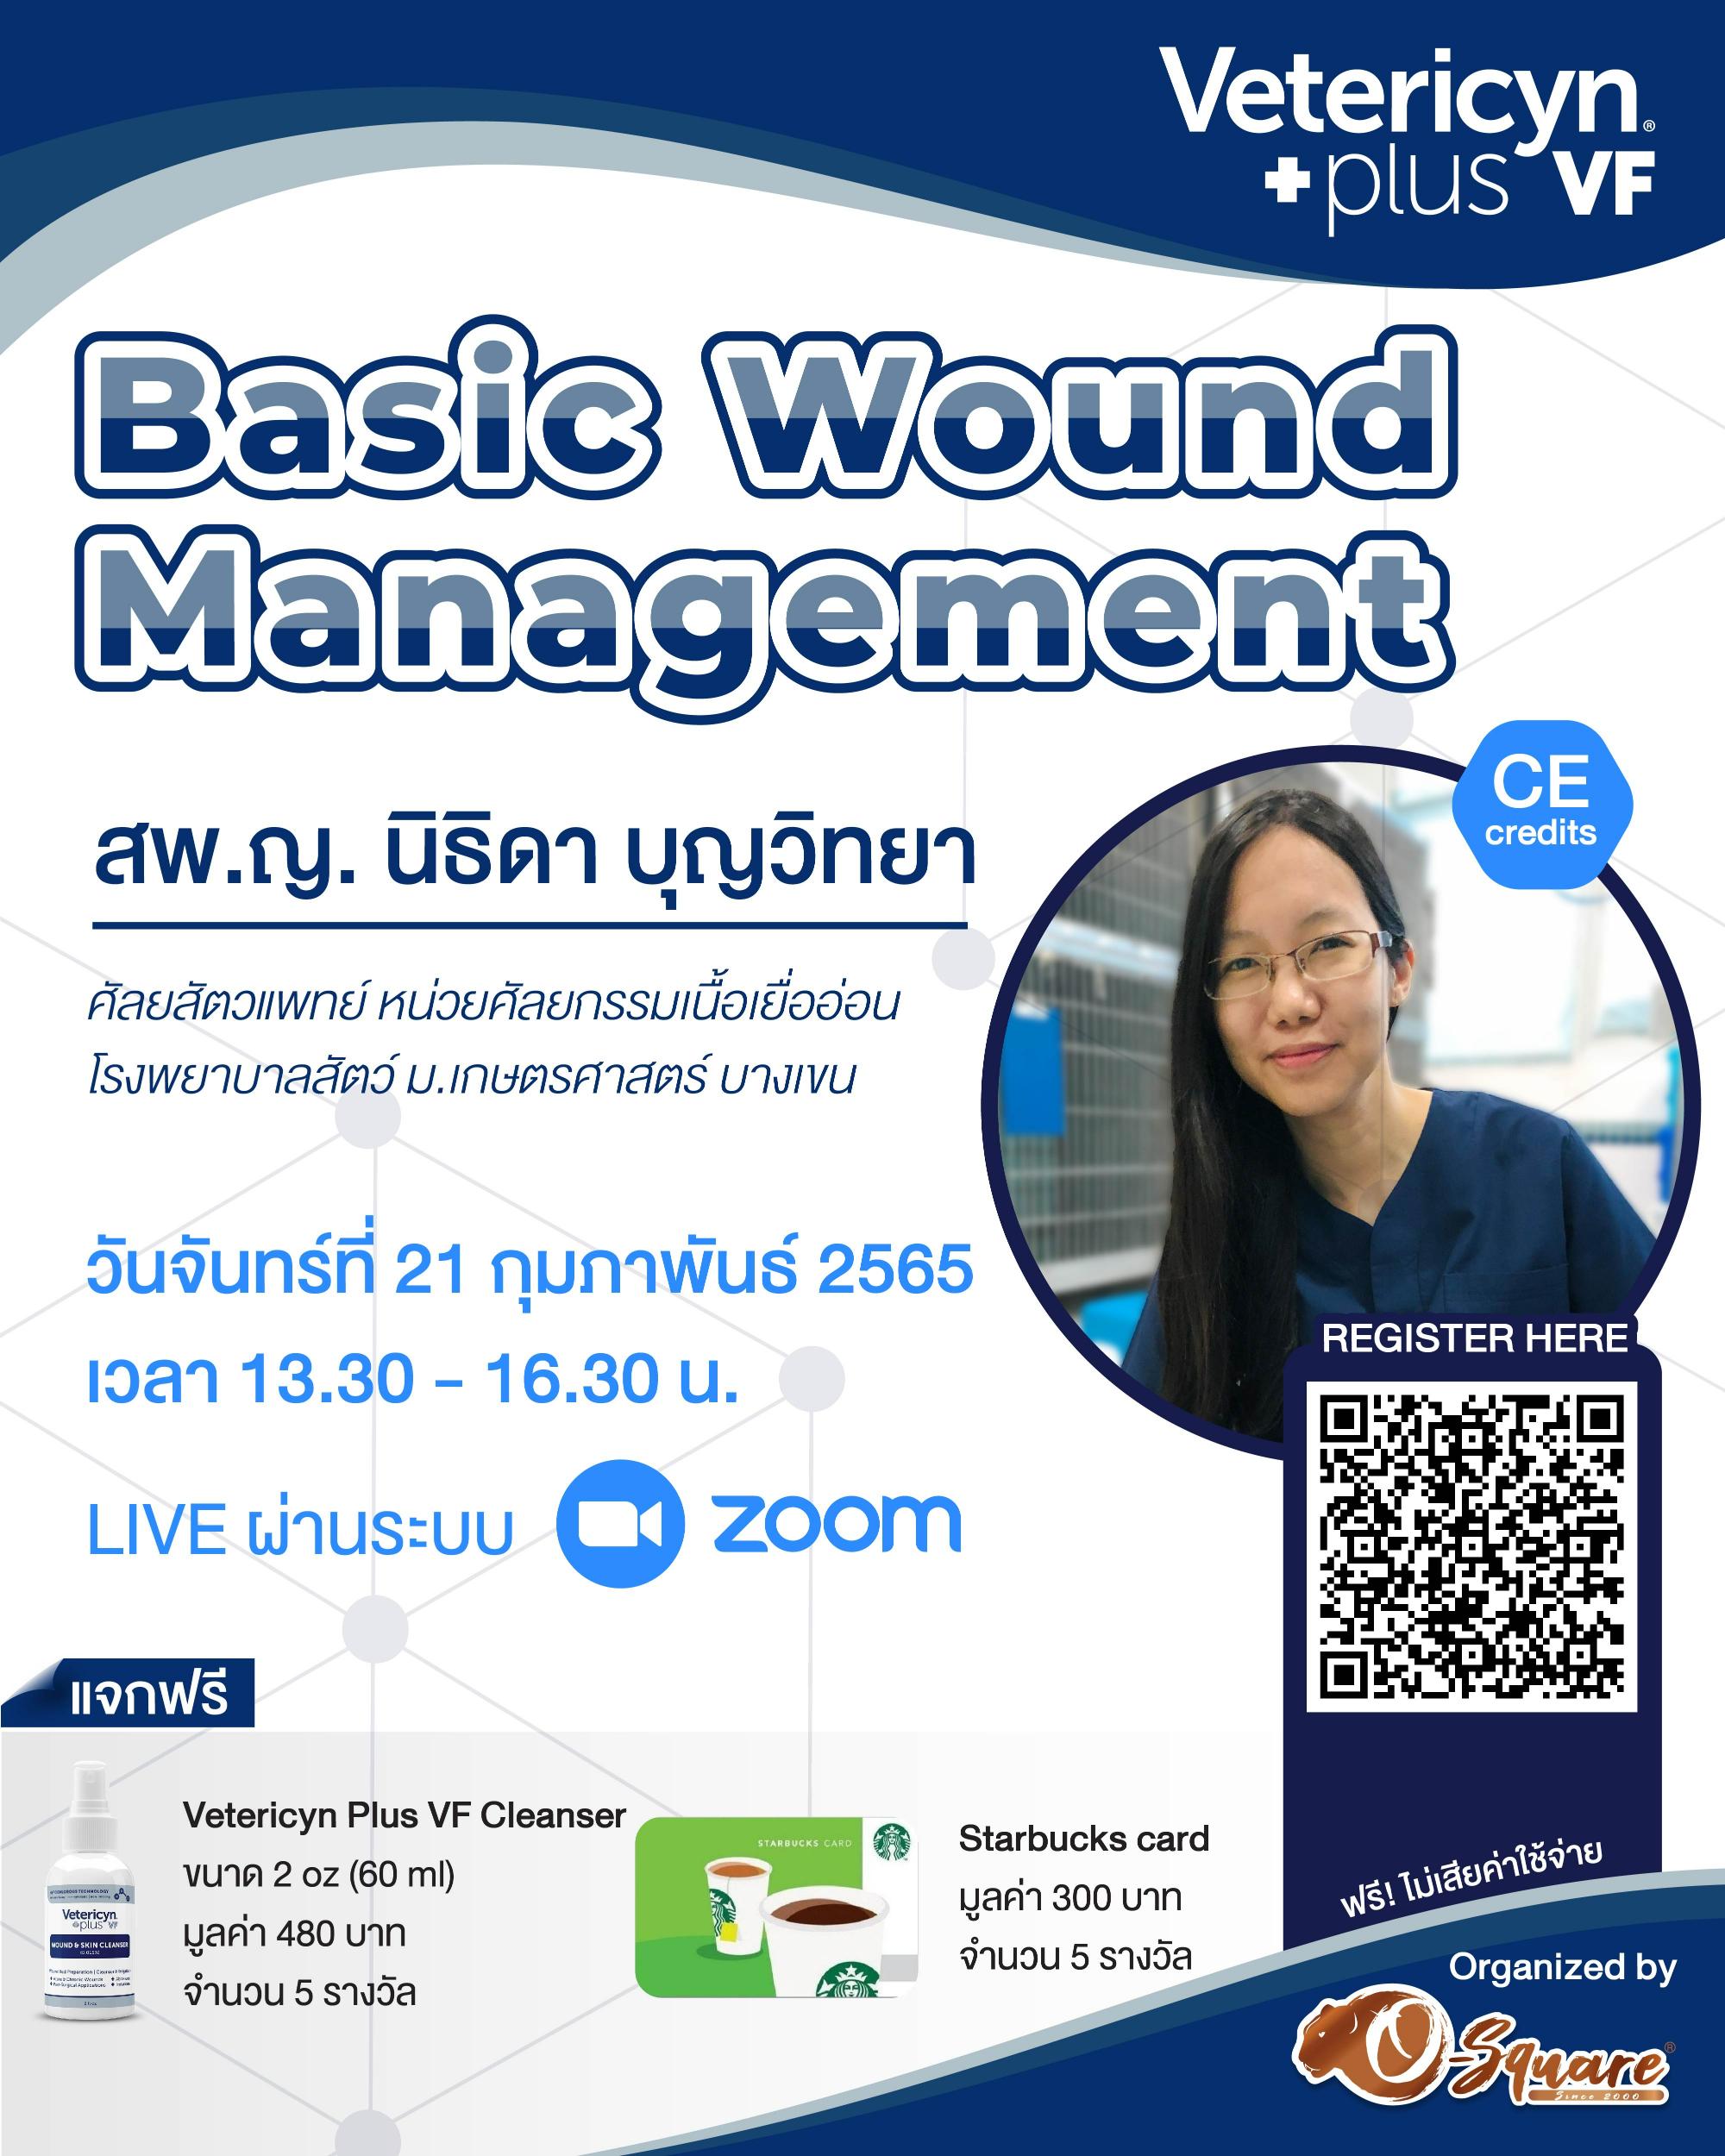 งานสัมมนาออนไลน์ “Basic Wound Management”